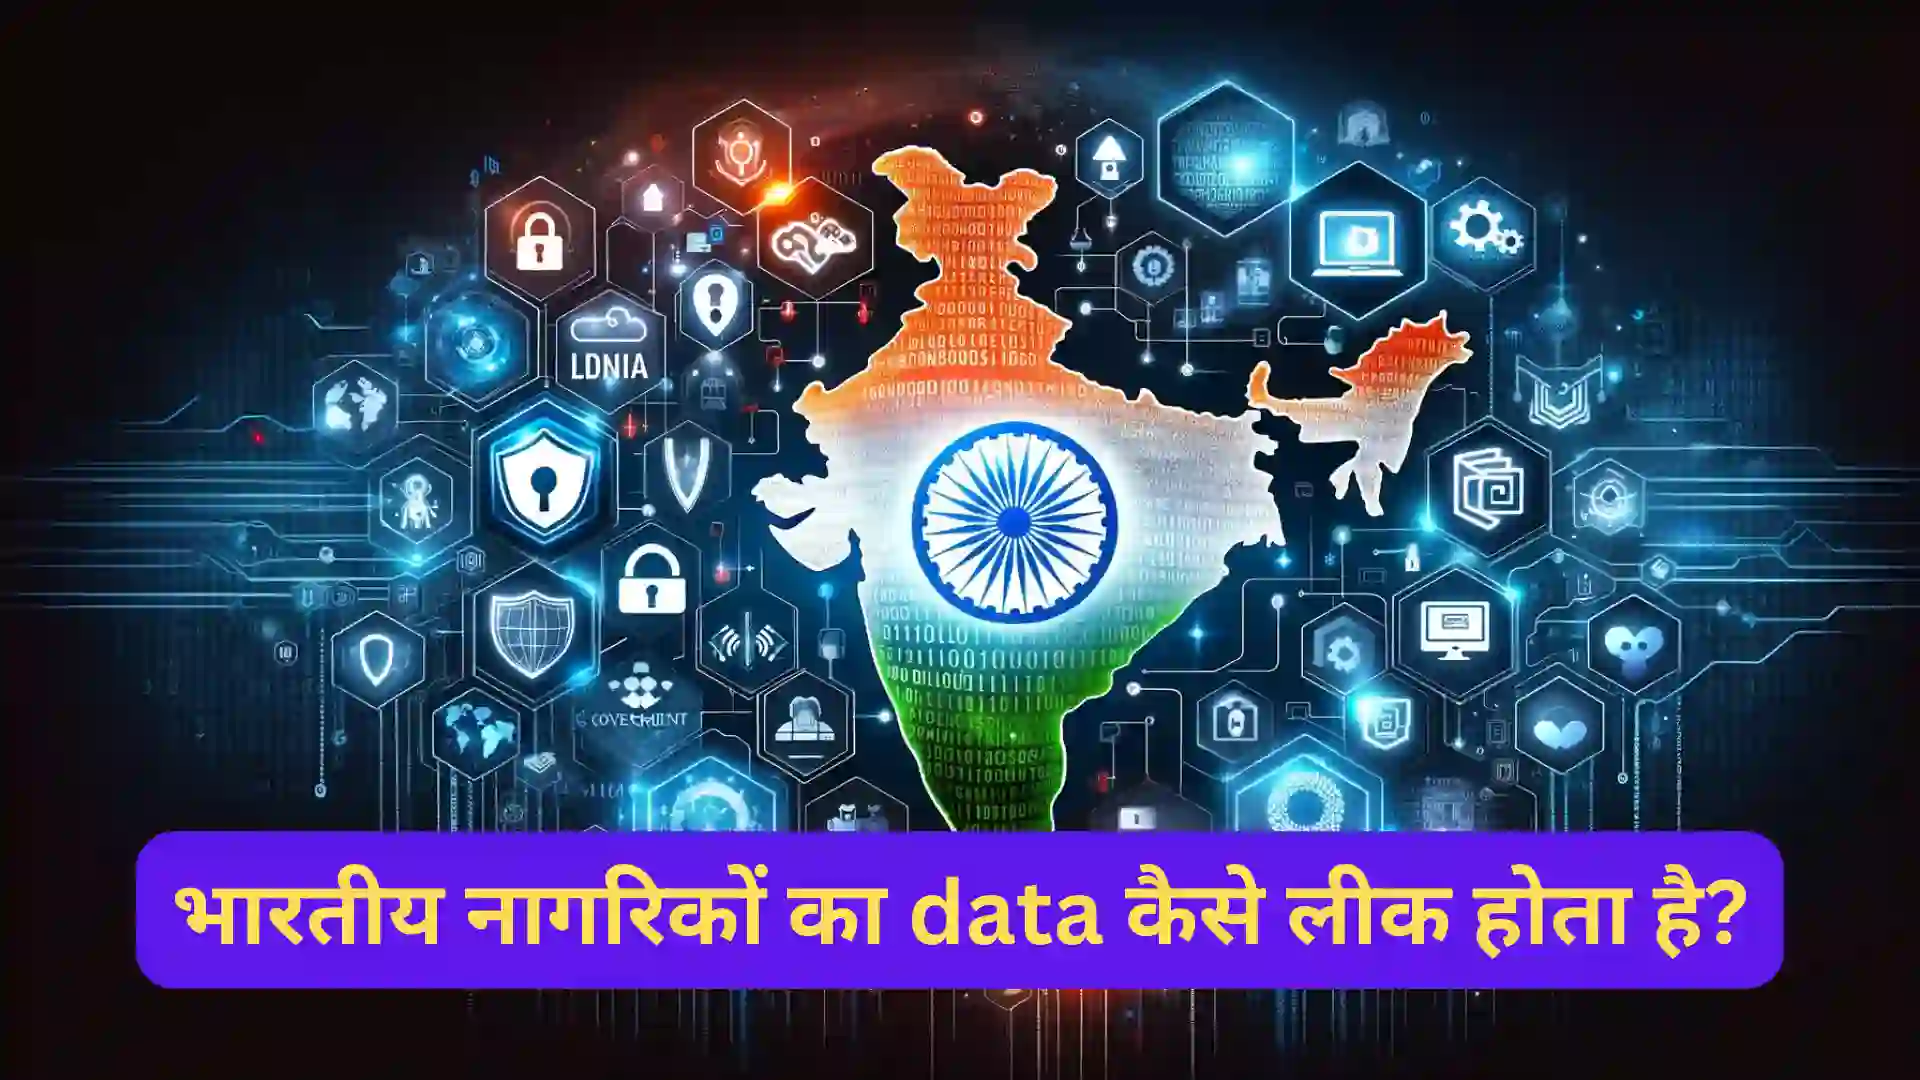 साइबर सुरक्षा की चुनौतियाँ :भारतीय नागरिकों का data कैसे लीक होता है?